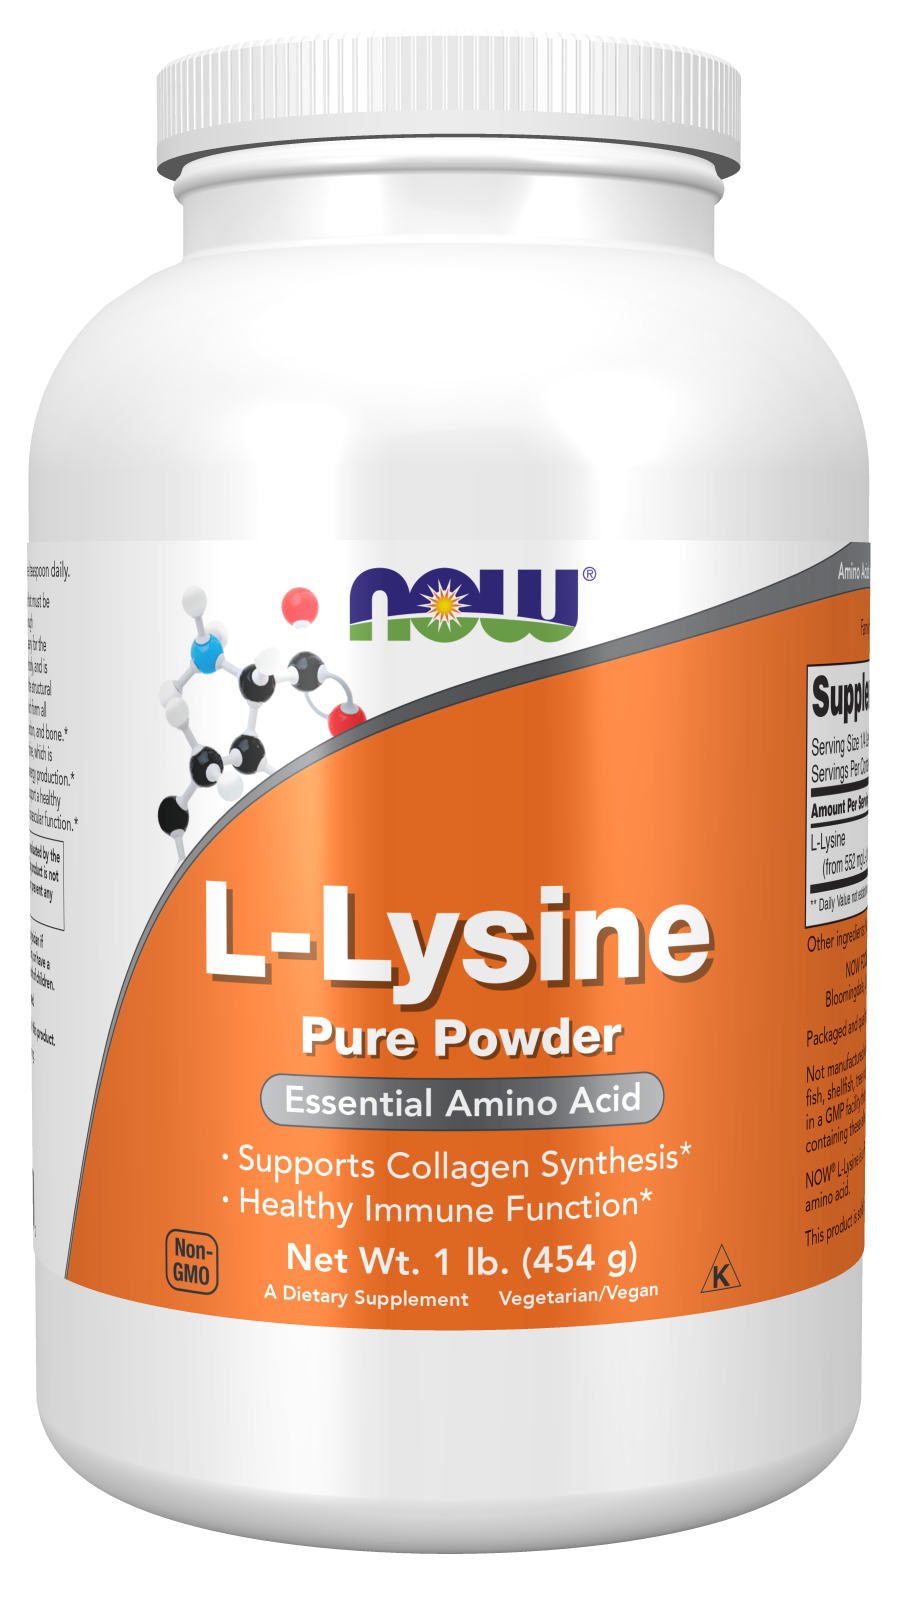 L-Lysine Powder - 1 lb. Bottle Front